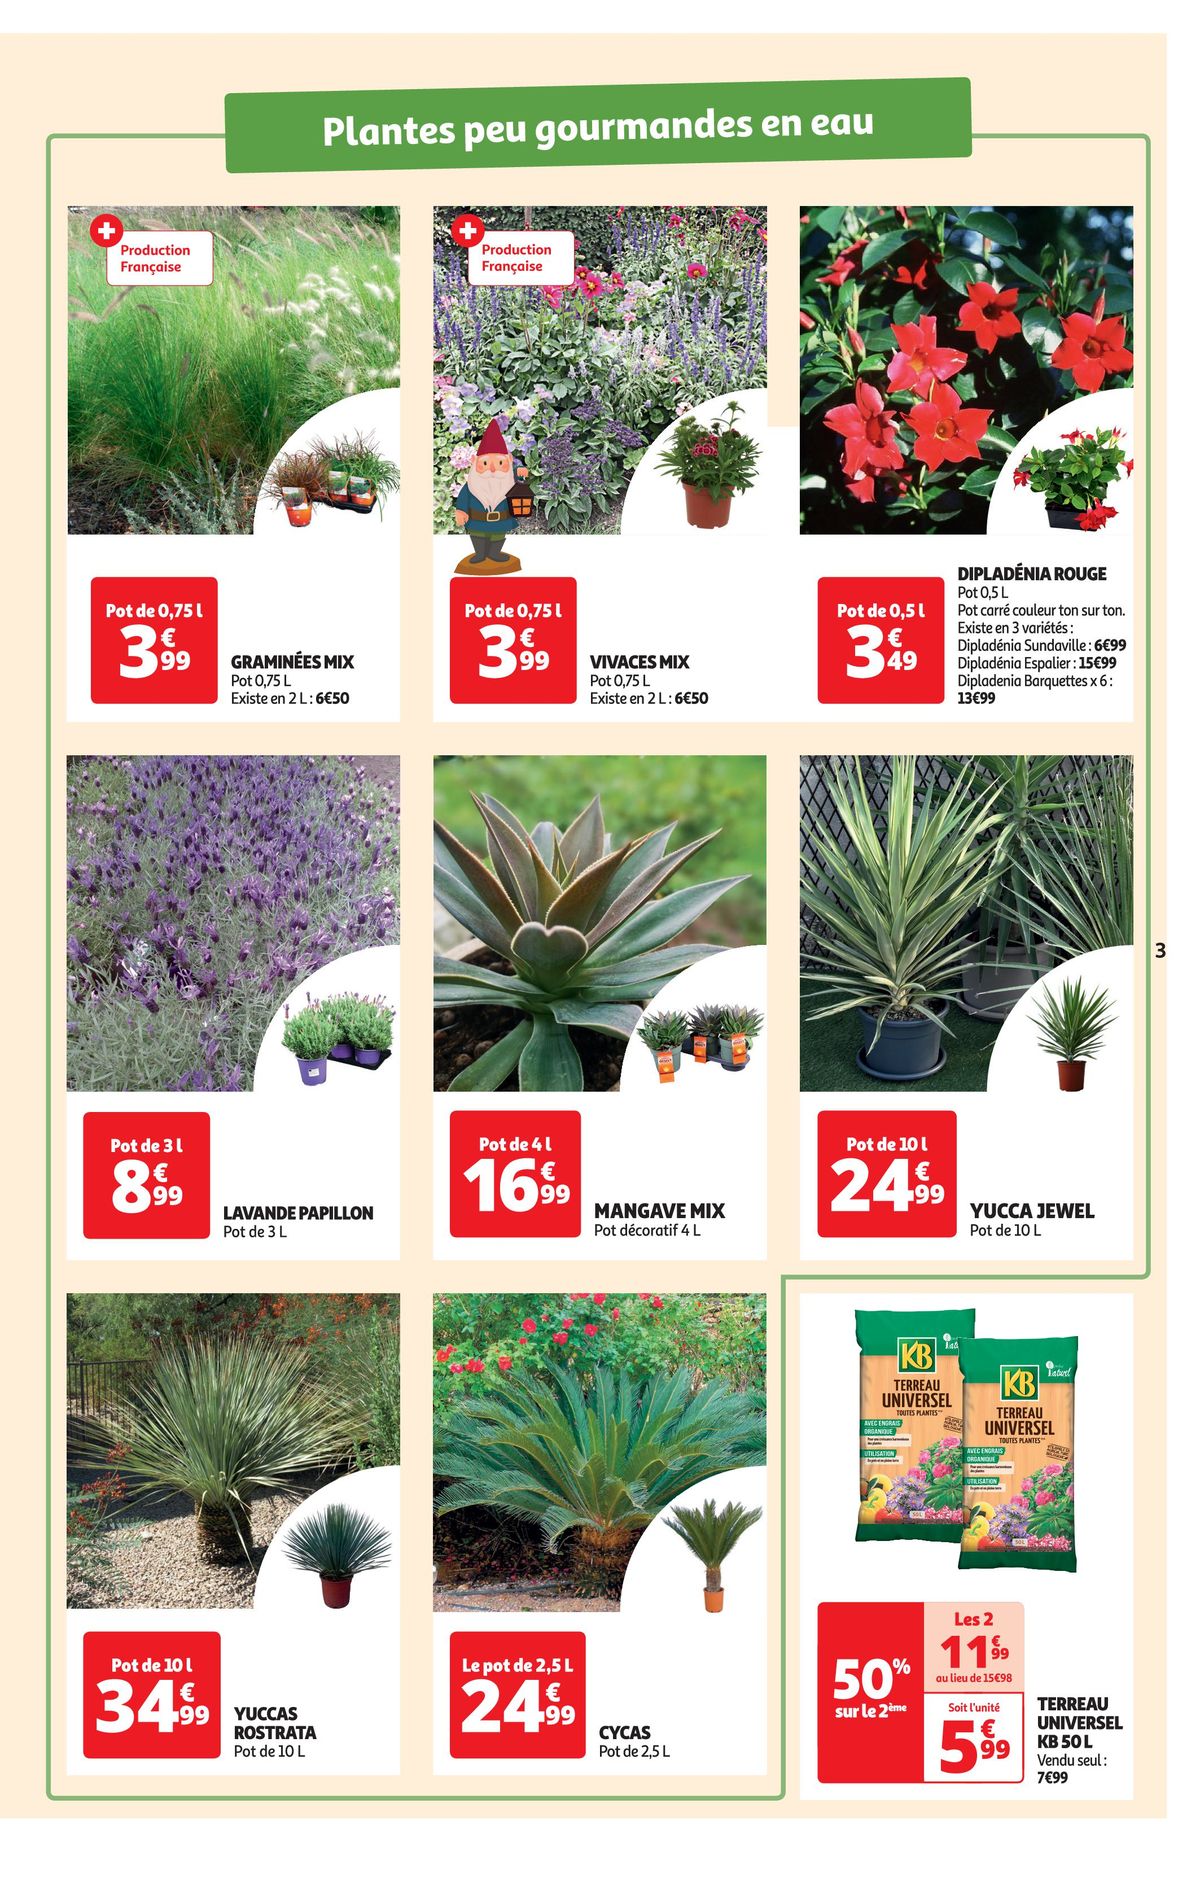 Catalogue Spécial floralies, page 00003